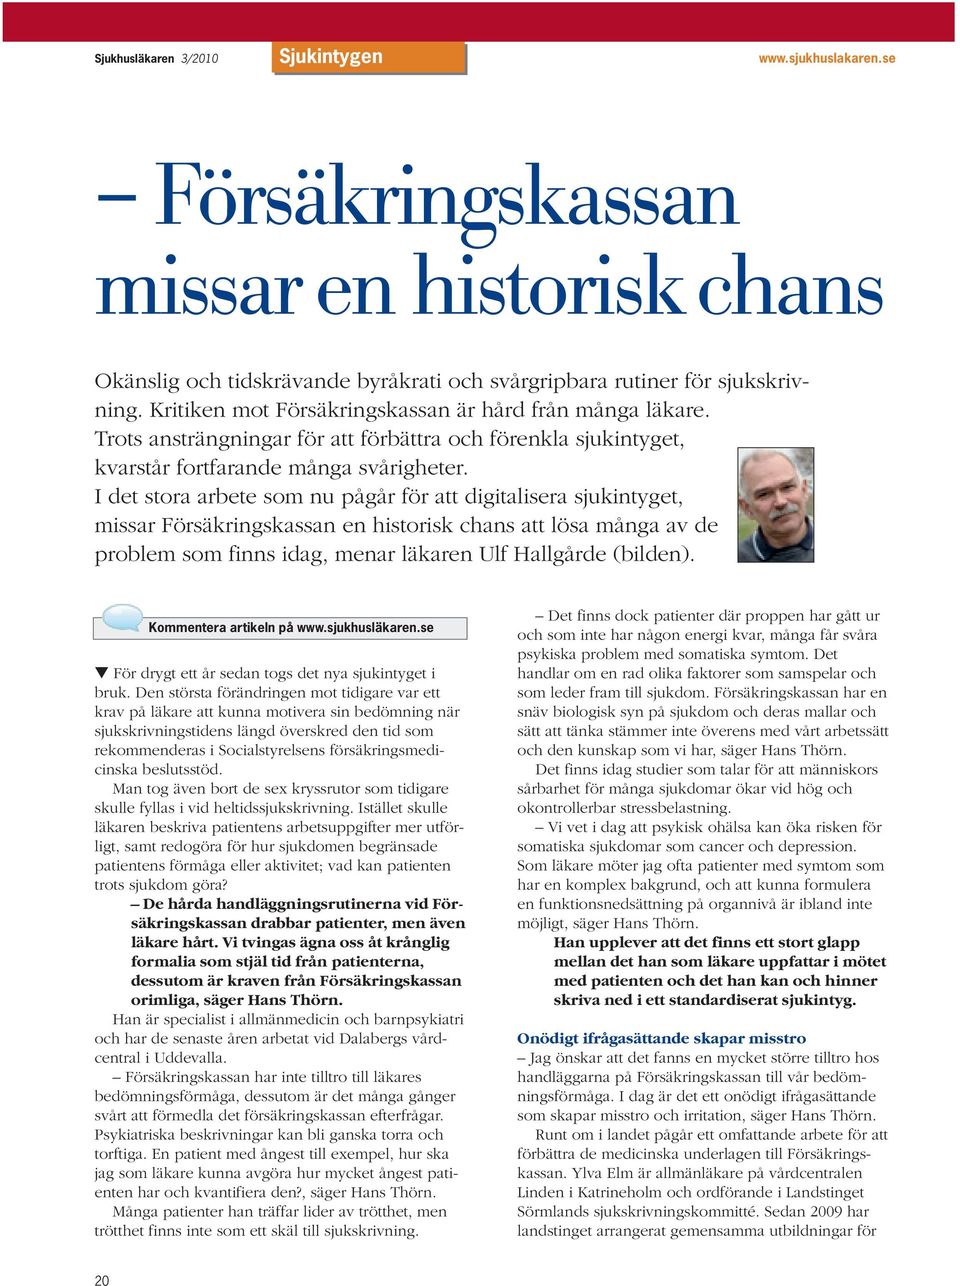 I det stora arbete som nu pågår för att digitalisera sjukintyget, missar Försäkringskassan en historisk chans att lösa många av de problem som finns idag, menar läkaren Ulf Hallgårde (bilden).